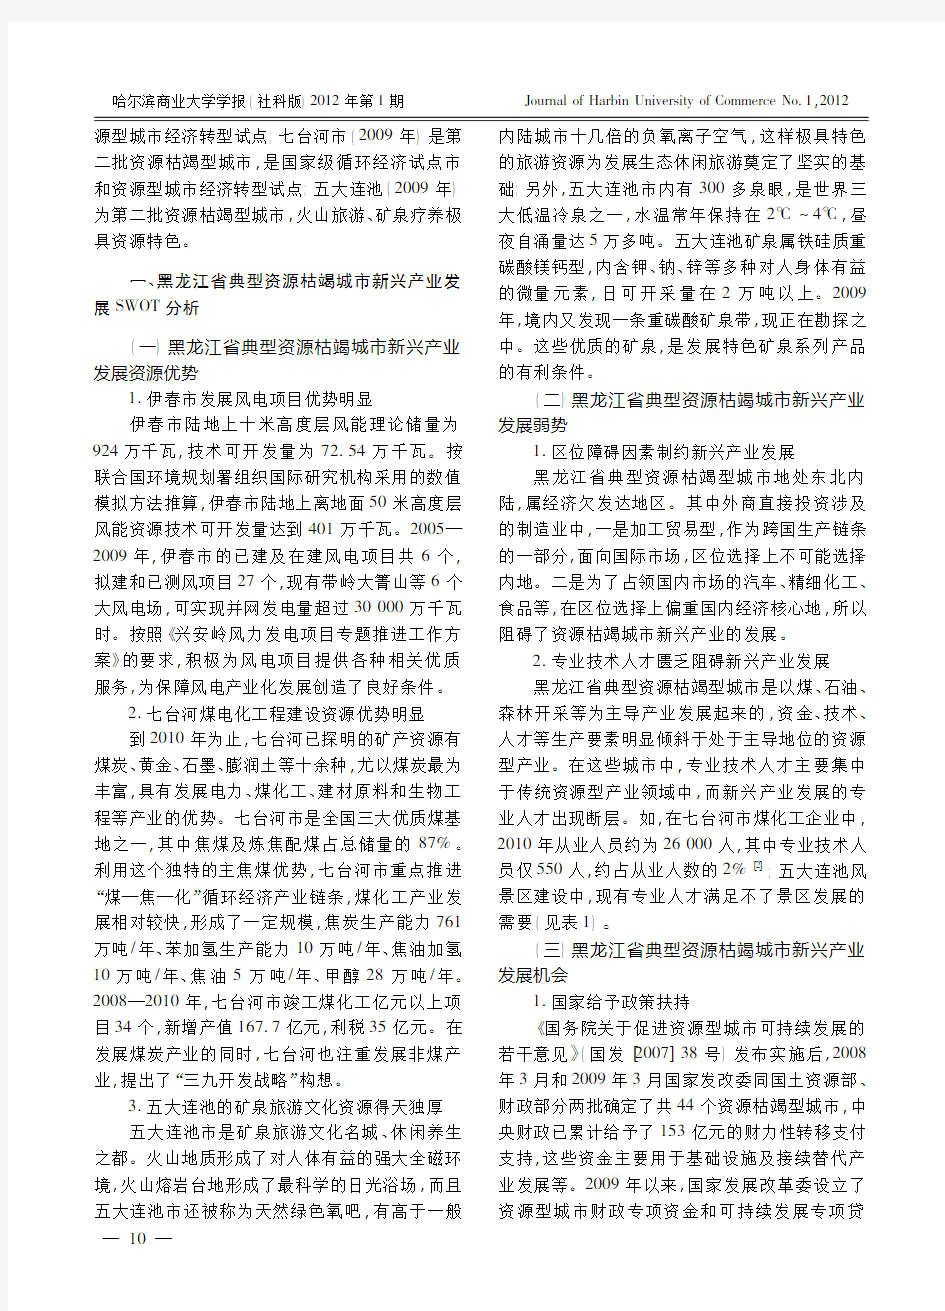 典型资源枯竭型城市新兴产业SWOT分析及公共政策_以黑龙江省为例